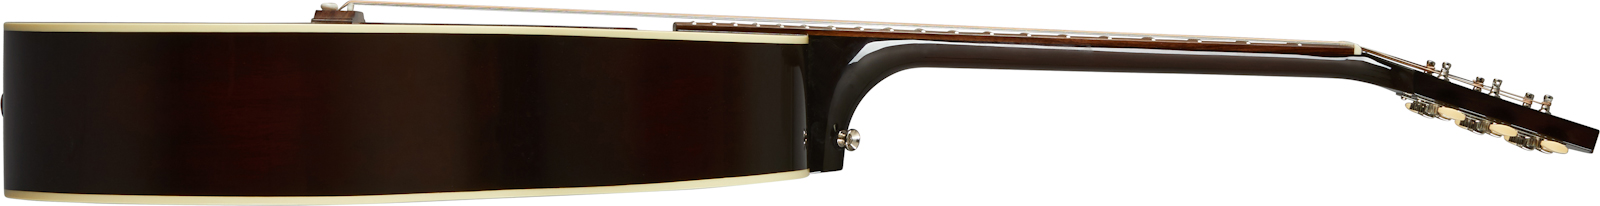 Gibson L-00 Original Lh 2020 Parlor Gaucher Epicea Acajou Rw - Vintage Sunburst - Guitare Electro Acoustique - Variation 2